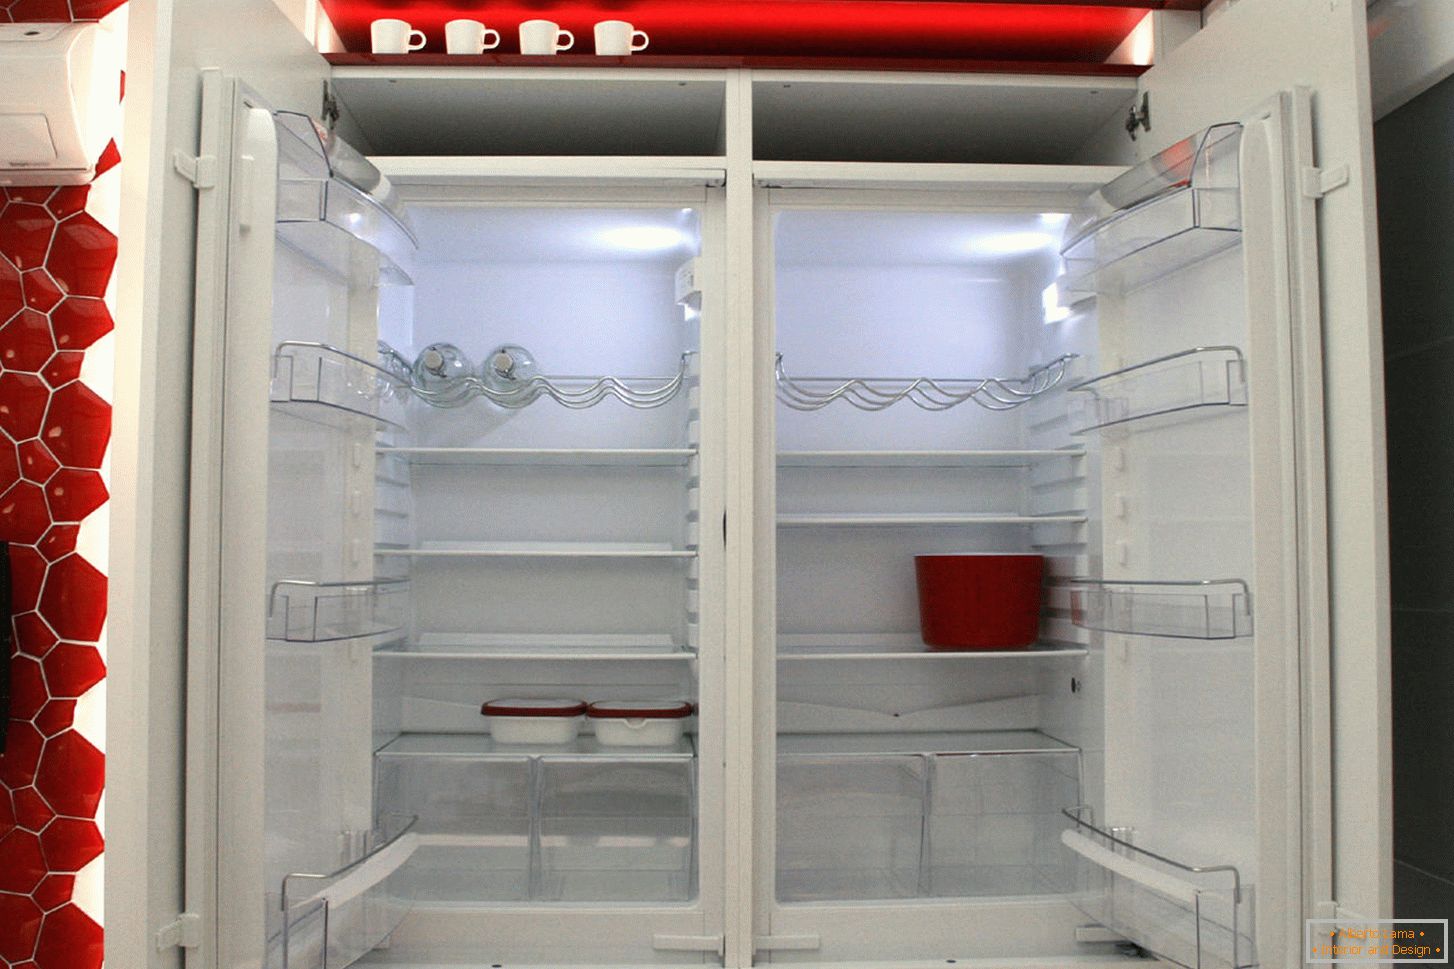 Moderni hladnjak u unutrašnjosti kuhinje